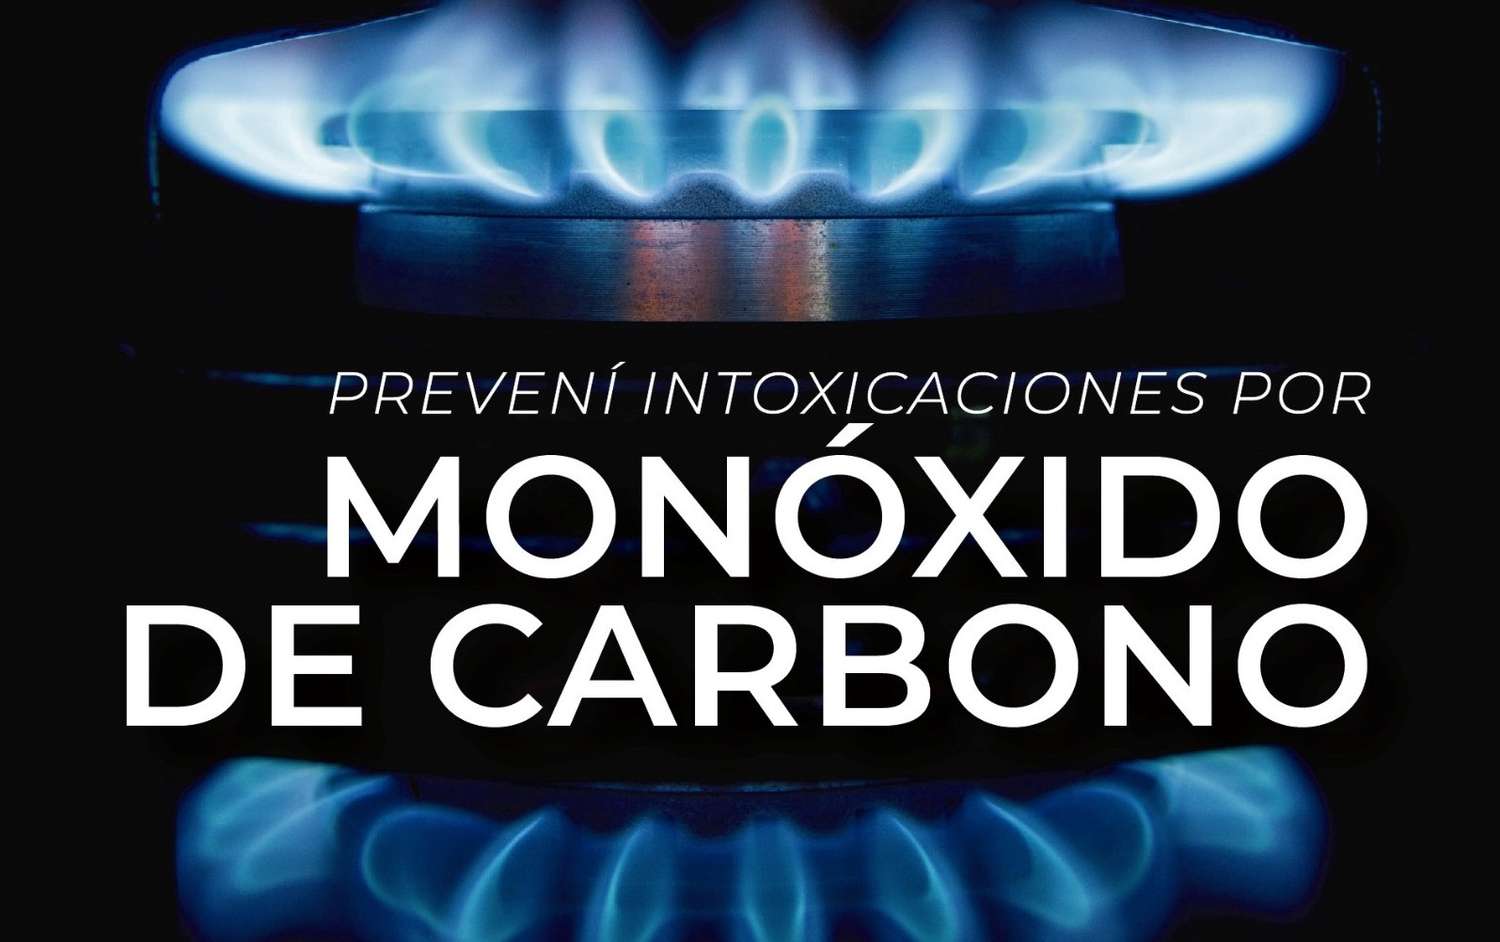 Balcarce: lanzan recomendaciones para evitar intoxicaciones por monóxido de carbono